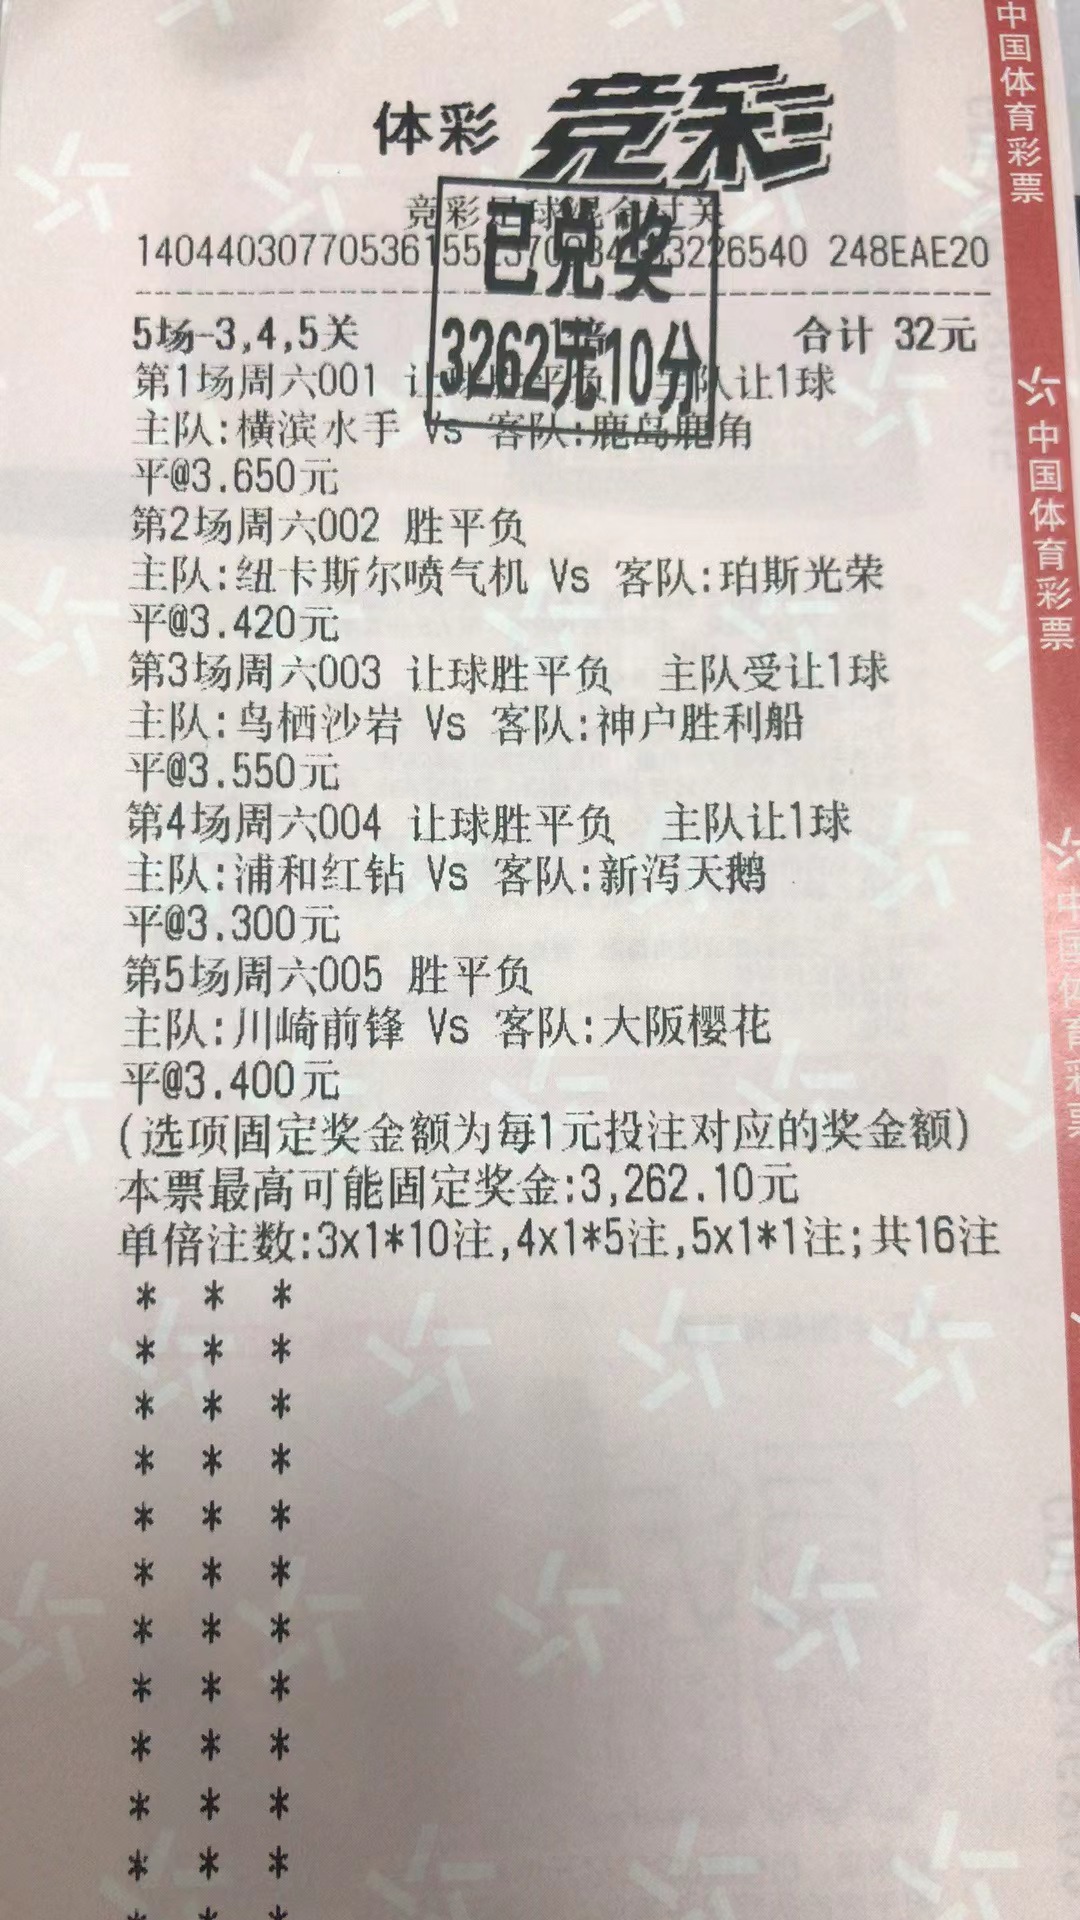 3月19日胜平负收米3262元-北单实体店